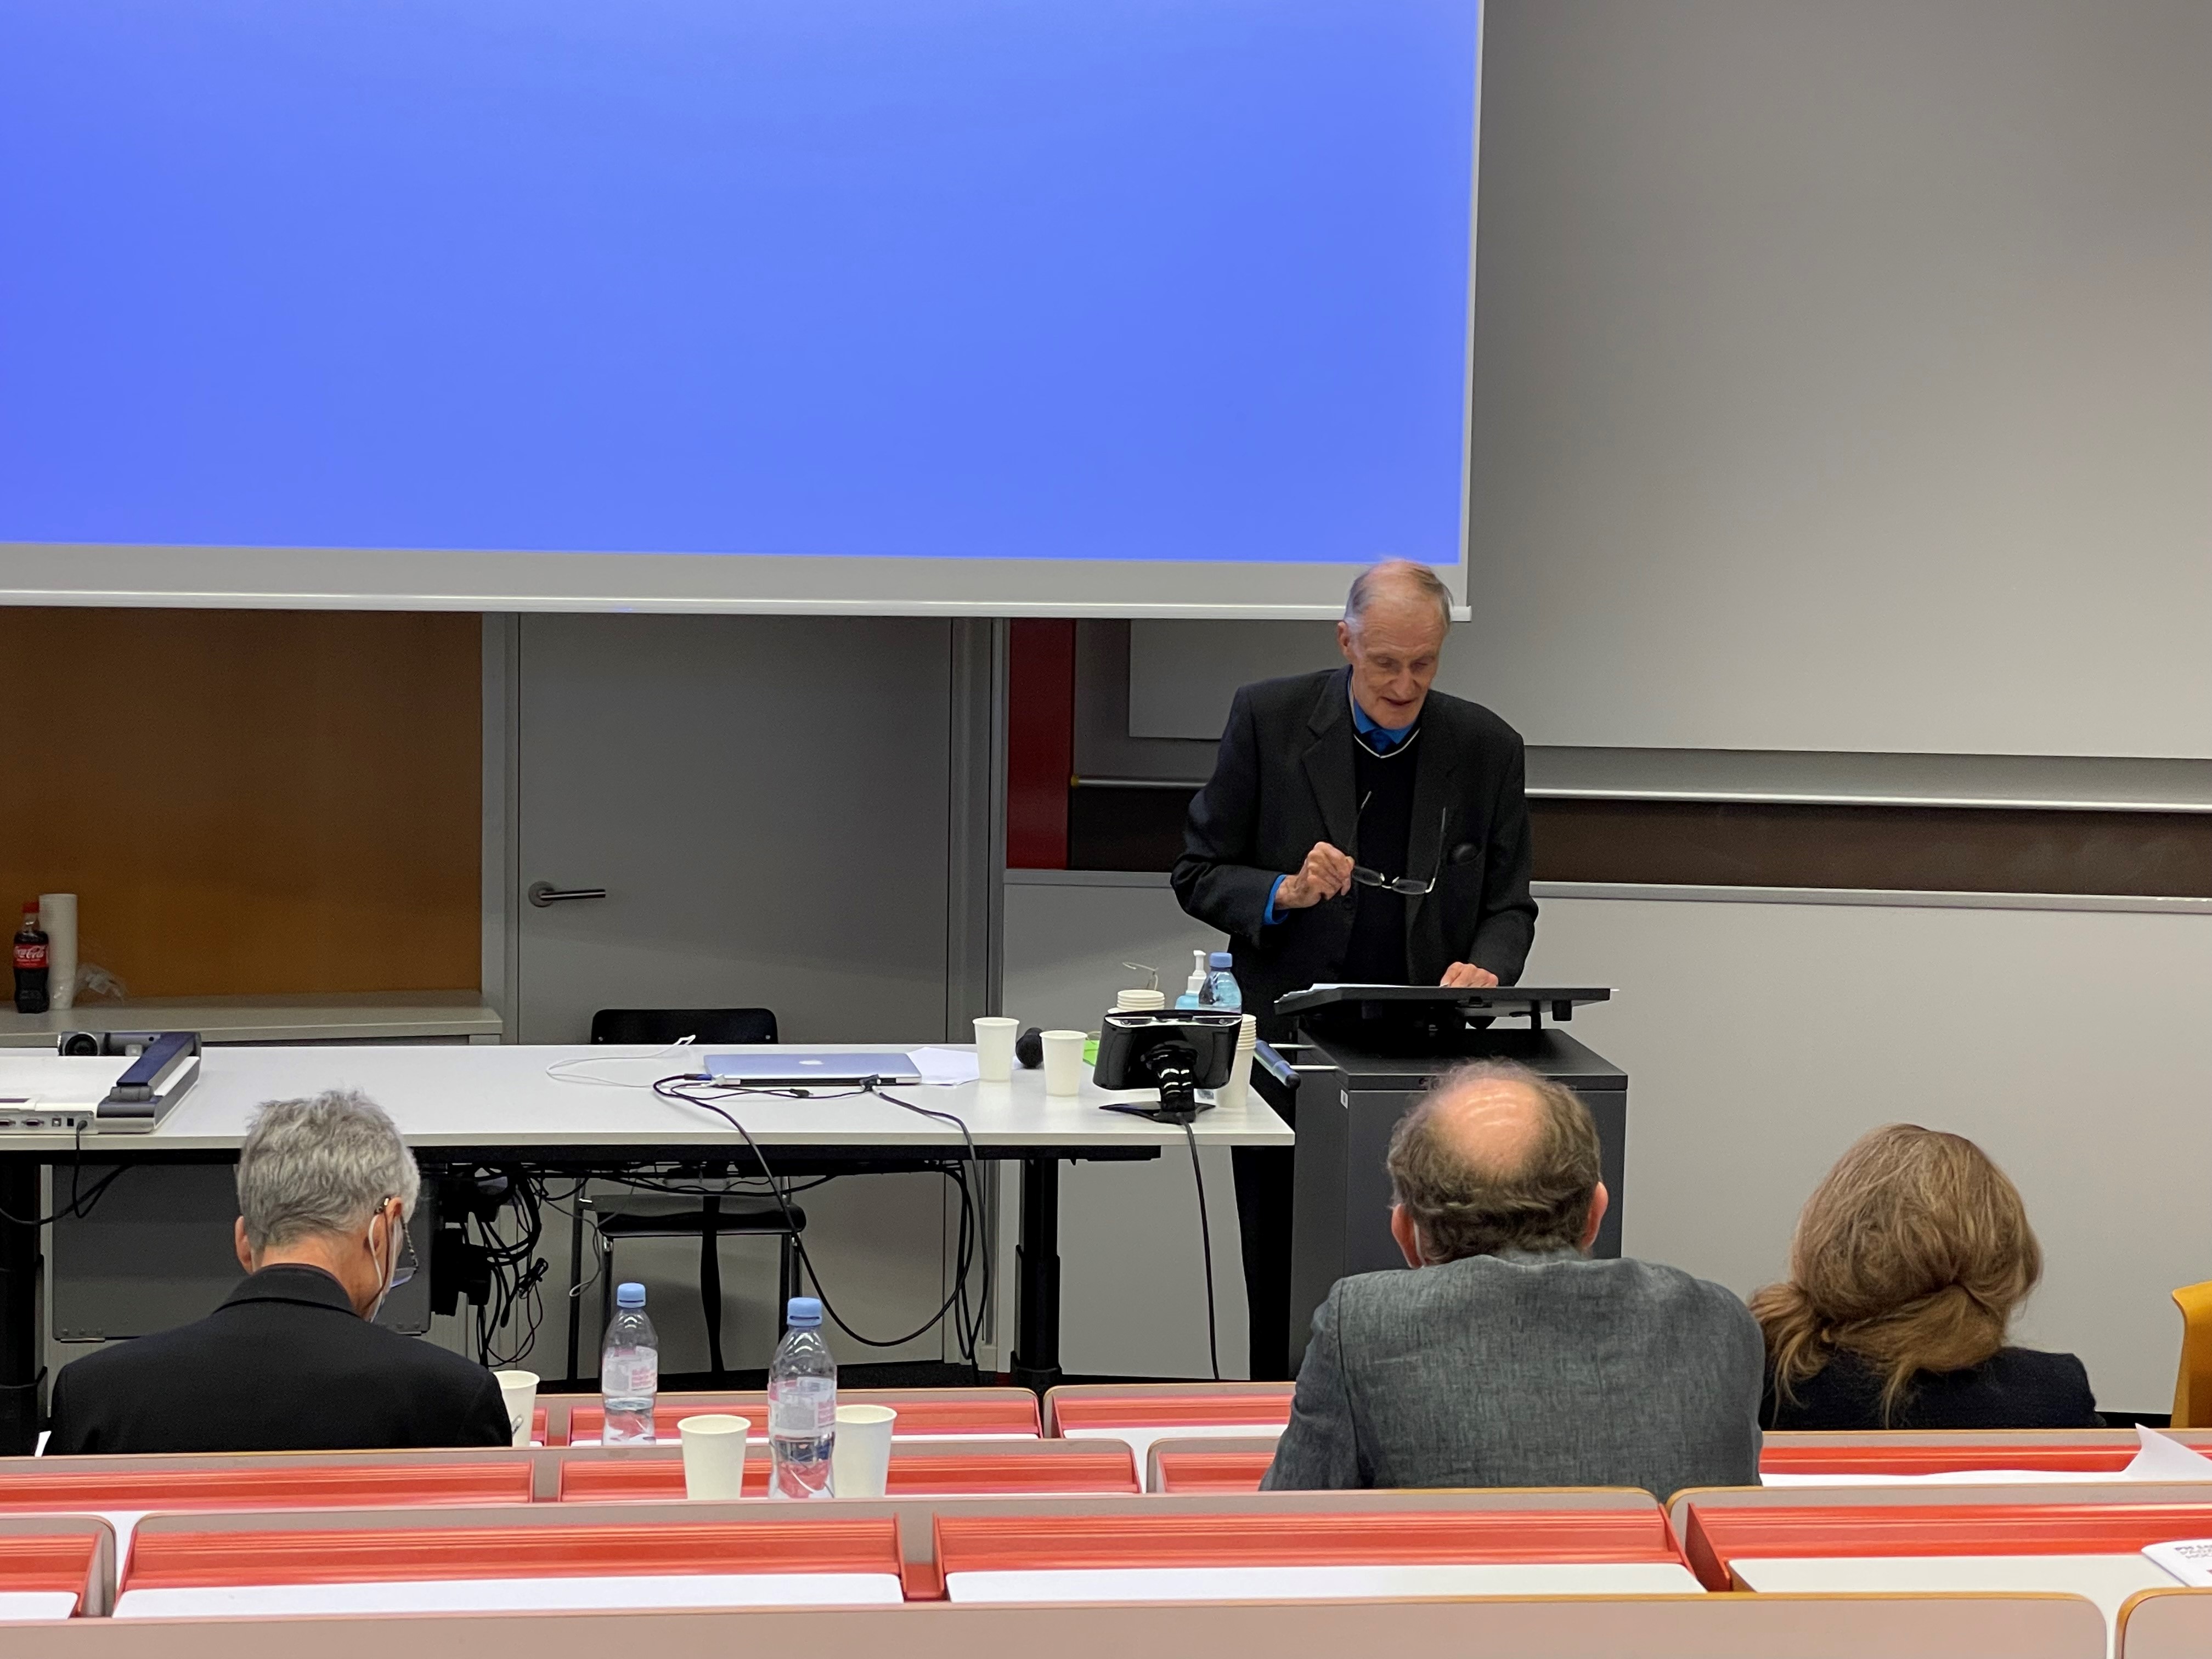 Prof. Dr. Heinz Sproll, Tagung in Luzern, September 2021